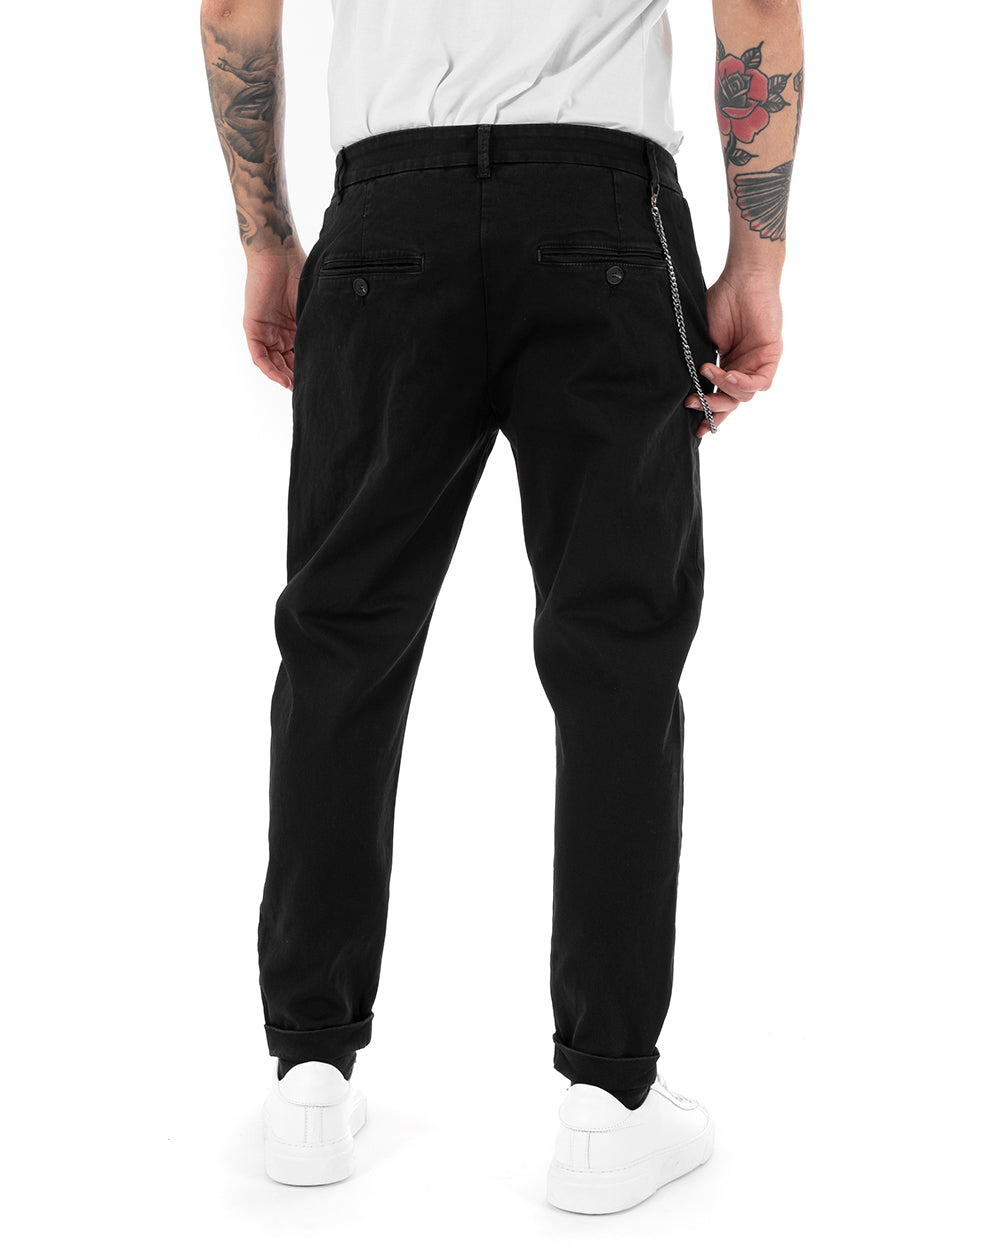 Pantaloni Uomo Tasca America Abbottonatura Allungata Classico Casual Nero GIOSAL-P5152A